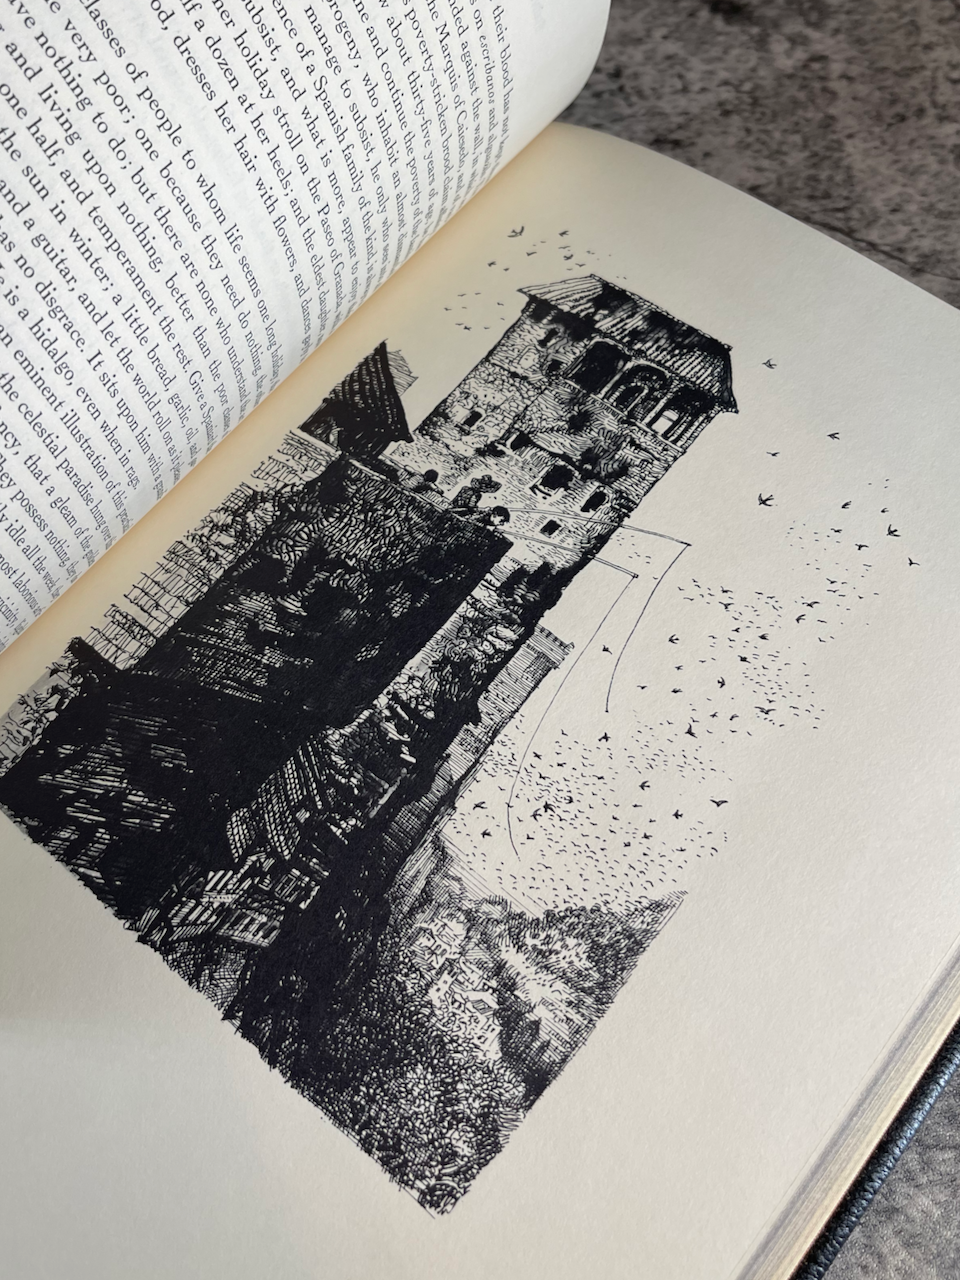 The Alhambra / The Easton Press / 100 Greatest Books / 1978 - Precious Cache